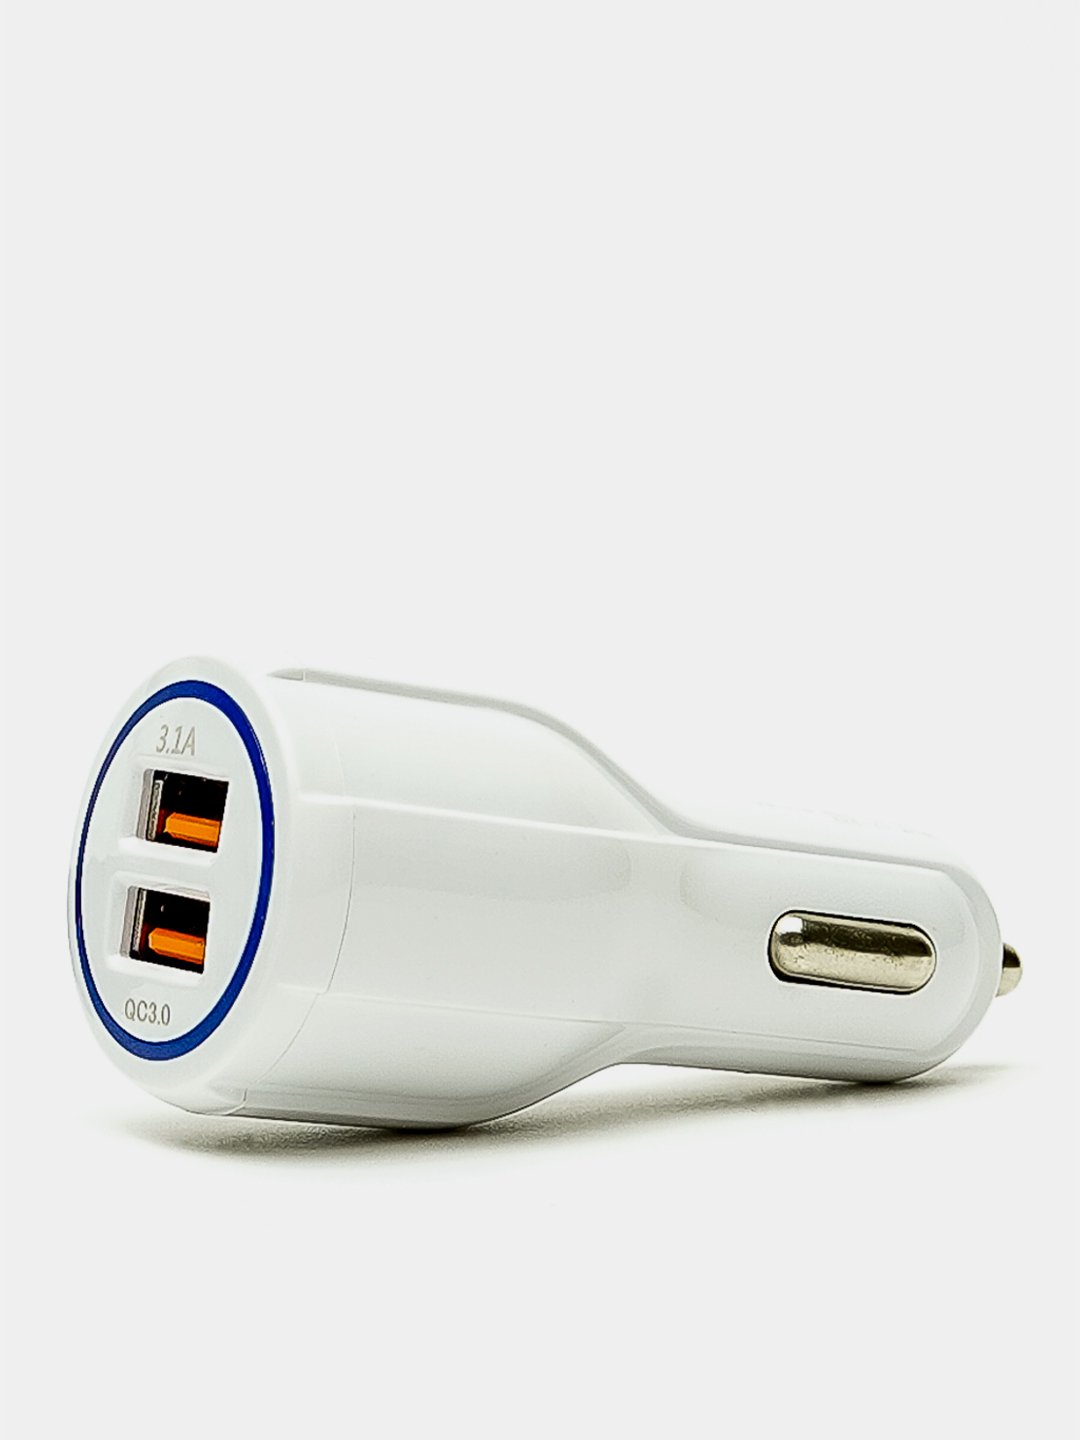 Шаг 1: Необходимые компоненты для сборки солнечной USB зарядки.